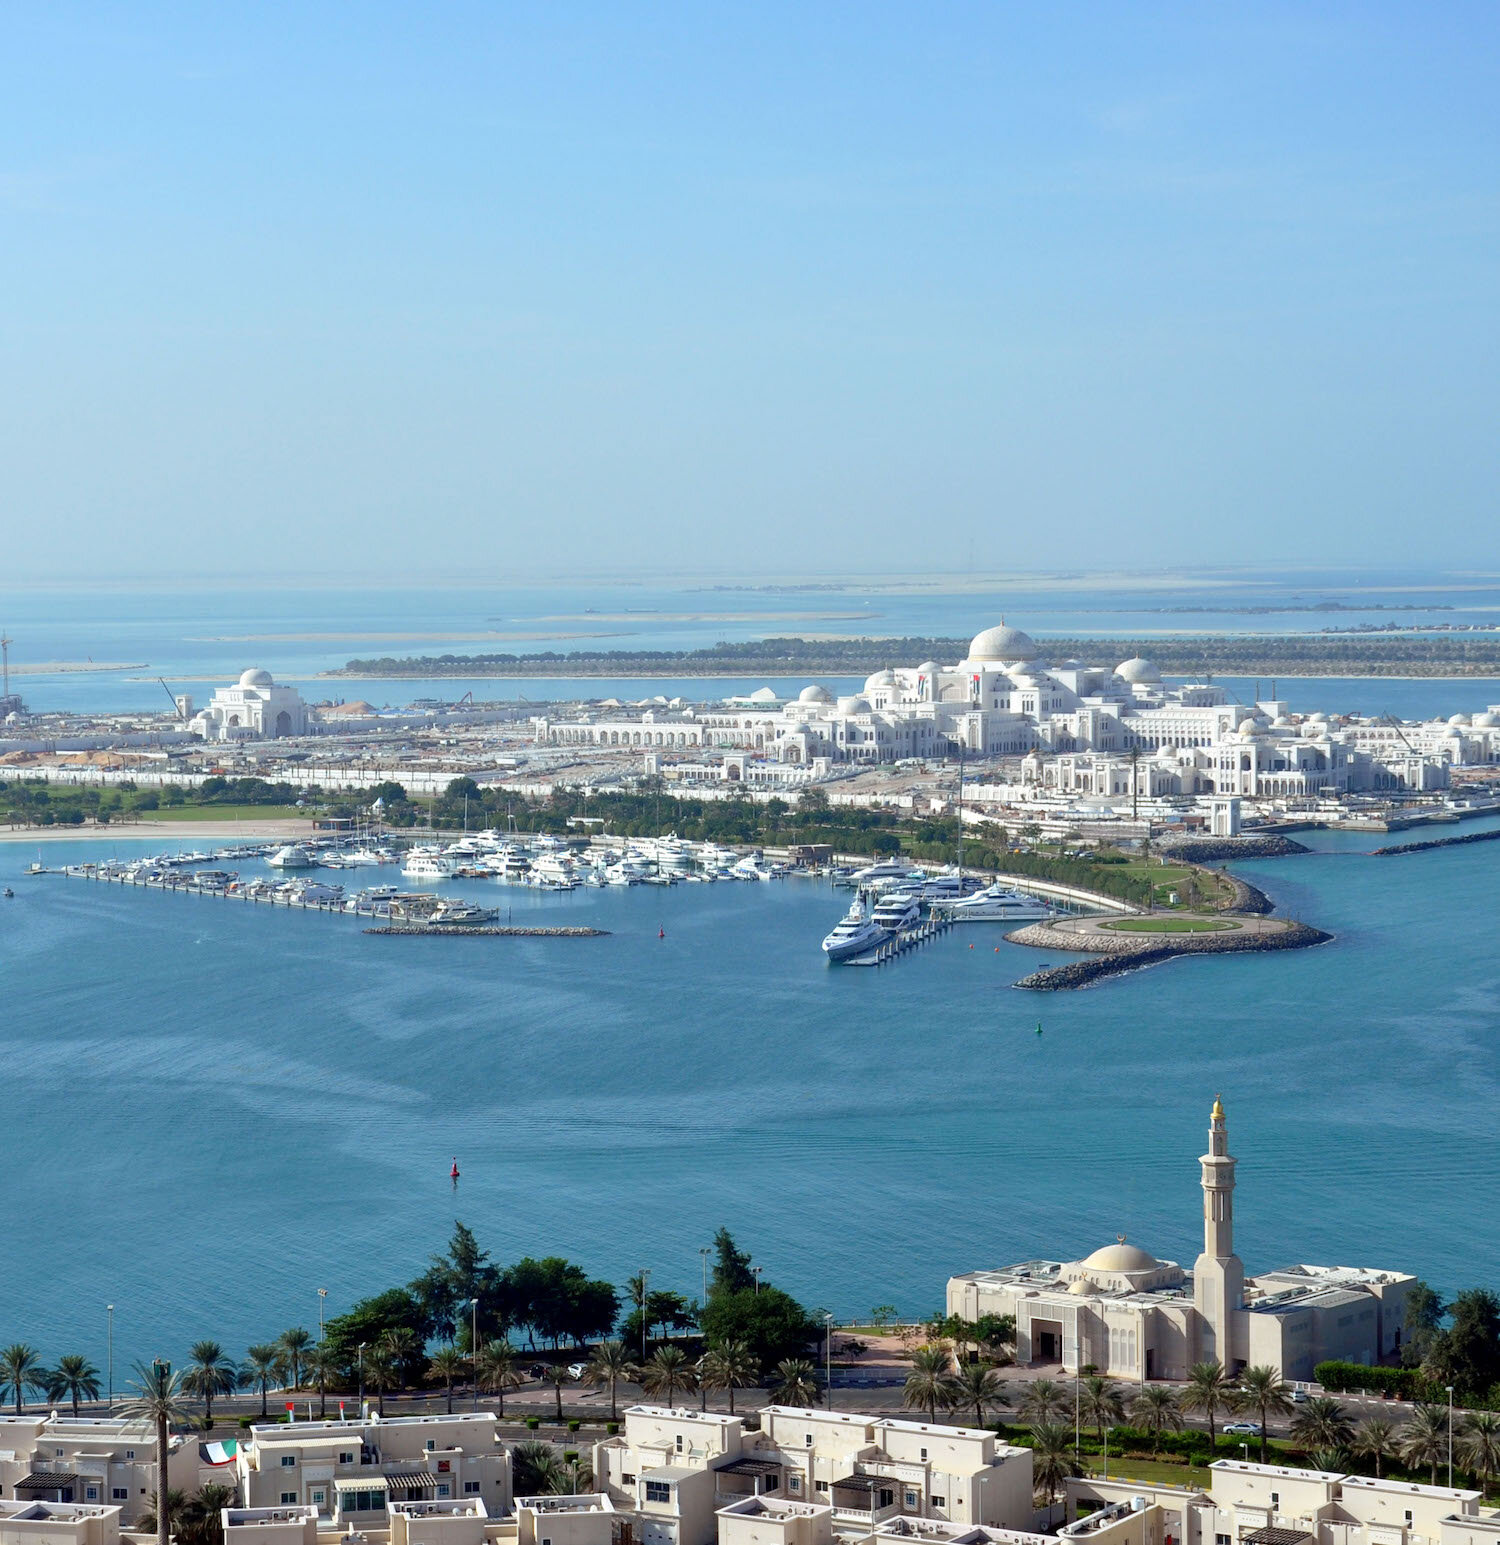 NDA-18. Abu Dhabi Emirates Palace Marina (1).jpg